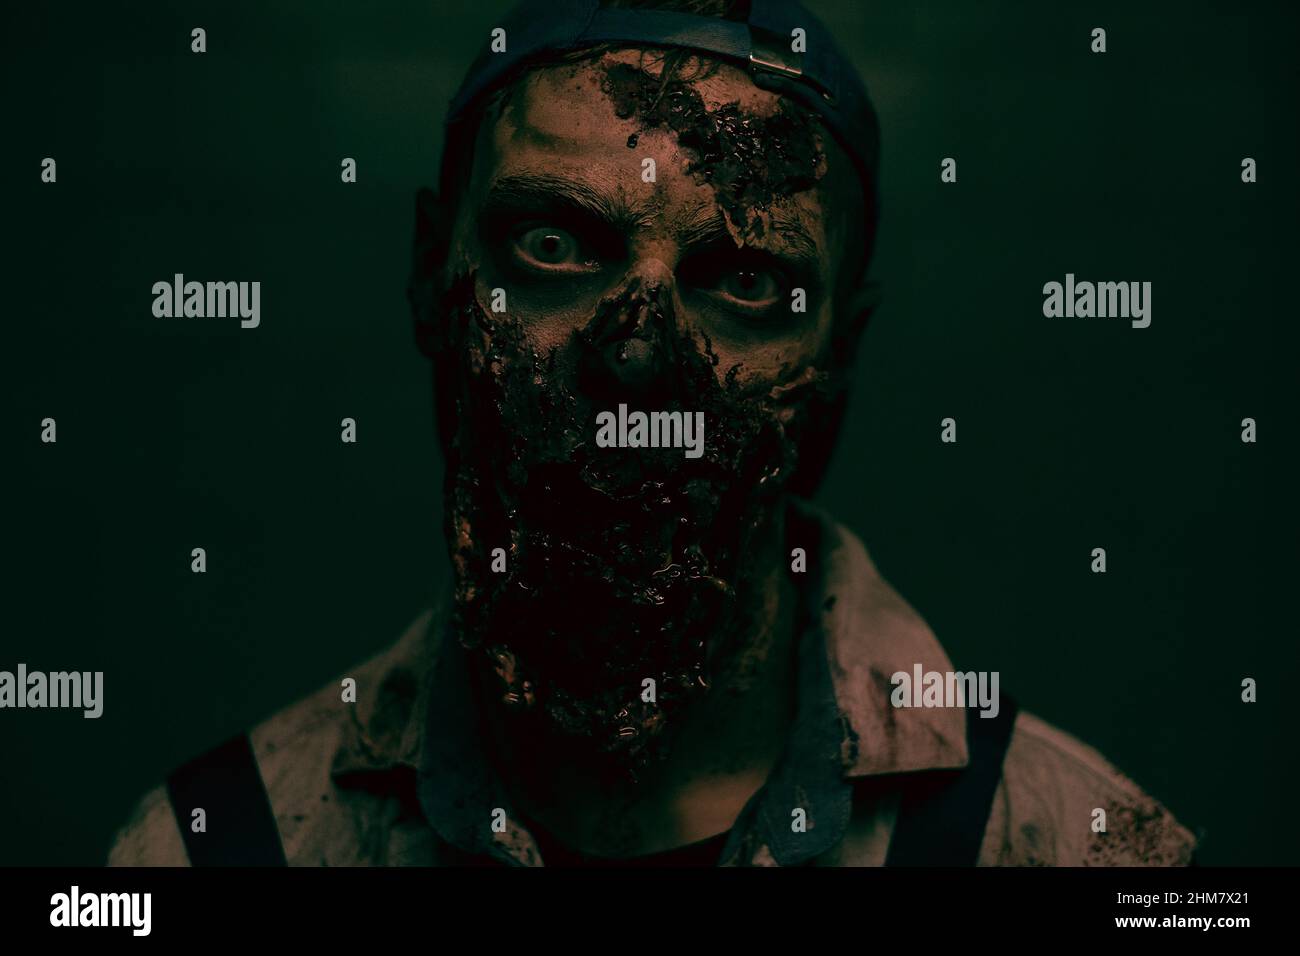 Gros plan de zombies effrayants avec un visage sanglant regardant l'appareil photo dans un cadre sombre d'horreur, espace de copie Banque D'Images